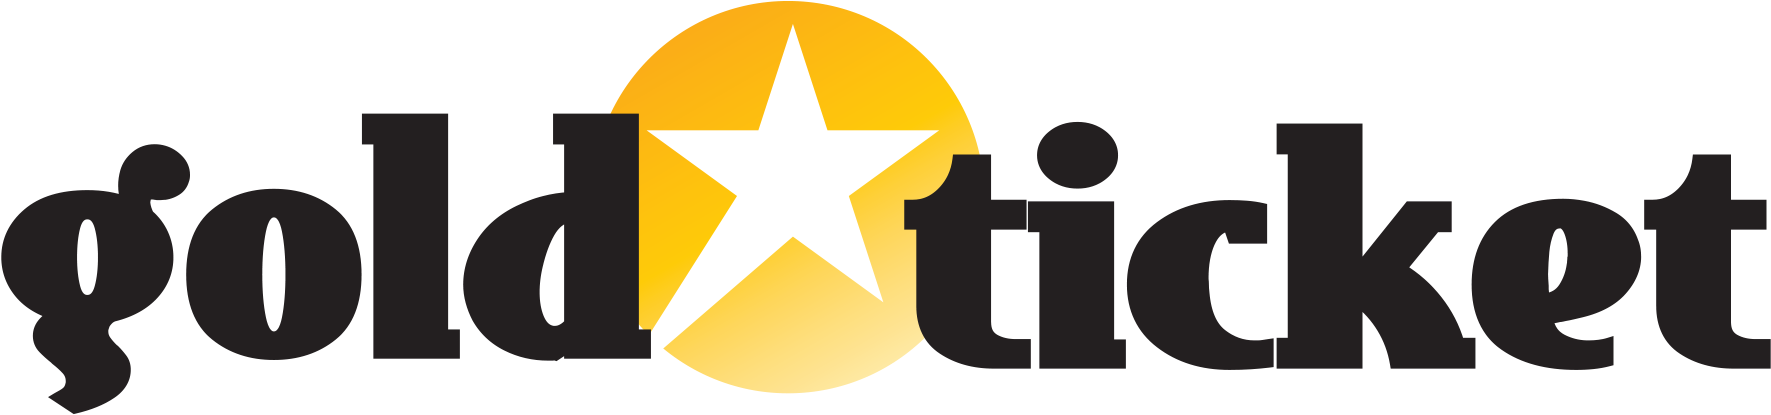 Gold Star Ticket - Jpeg (1786x421)